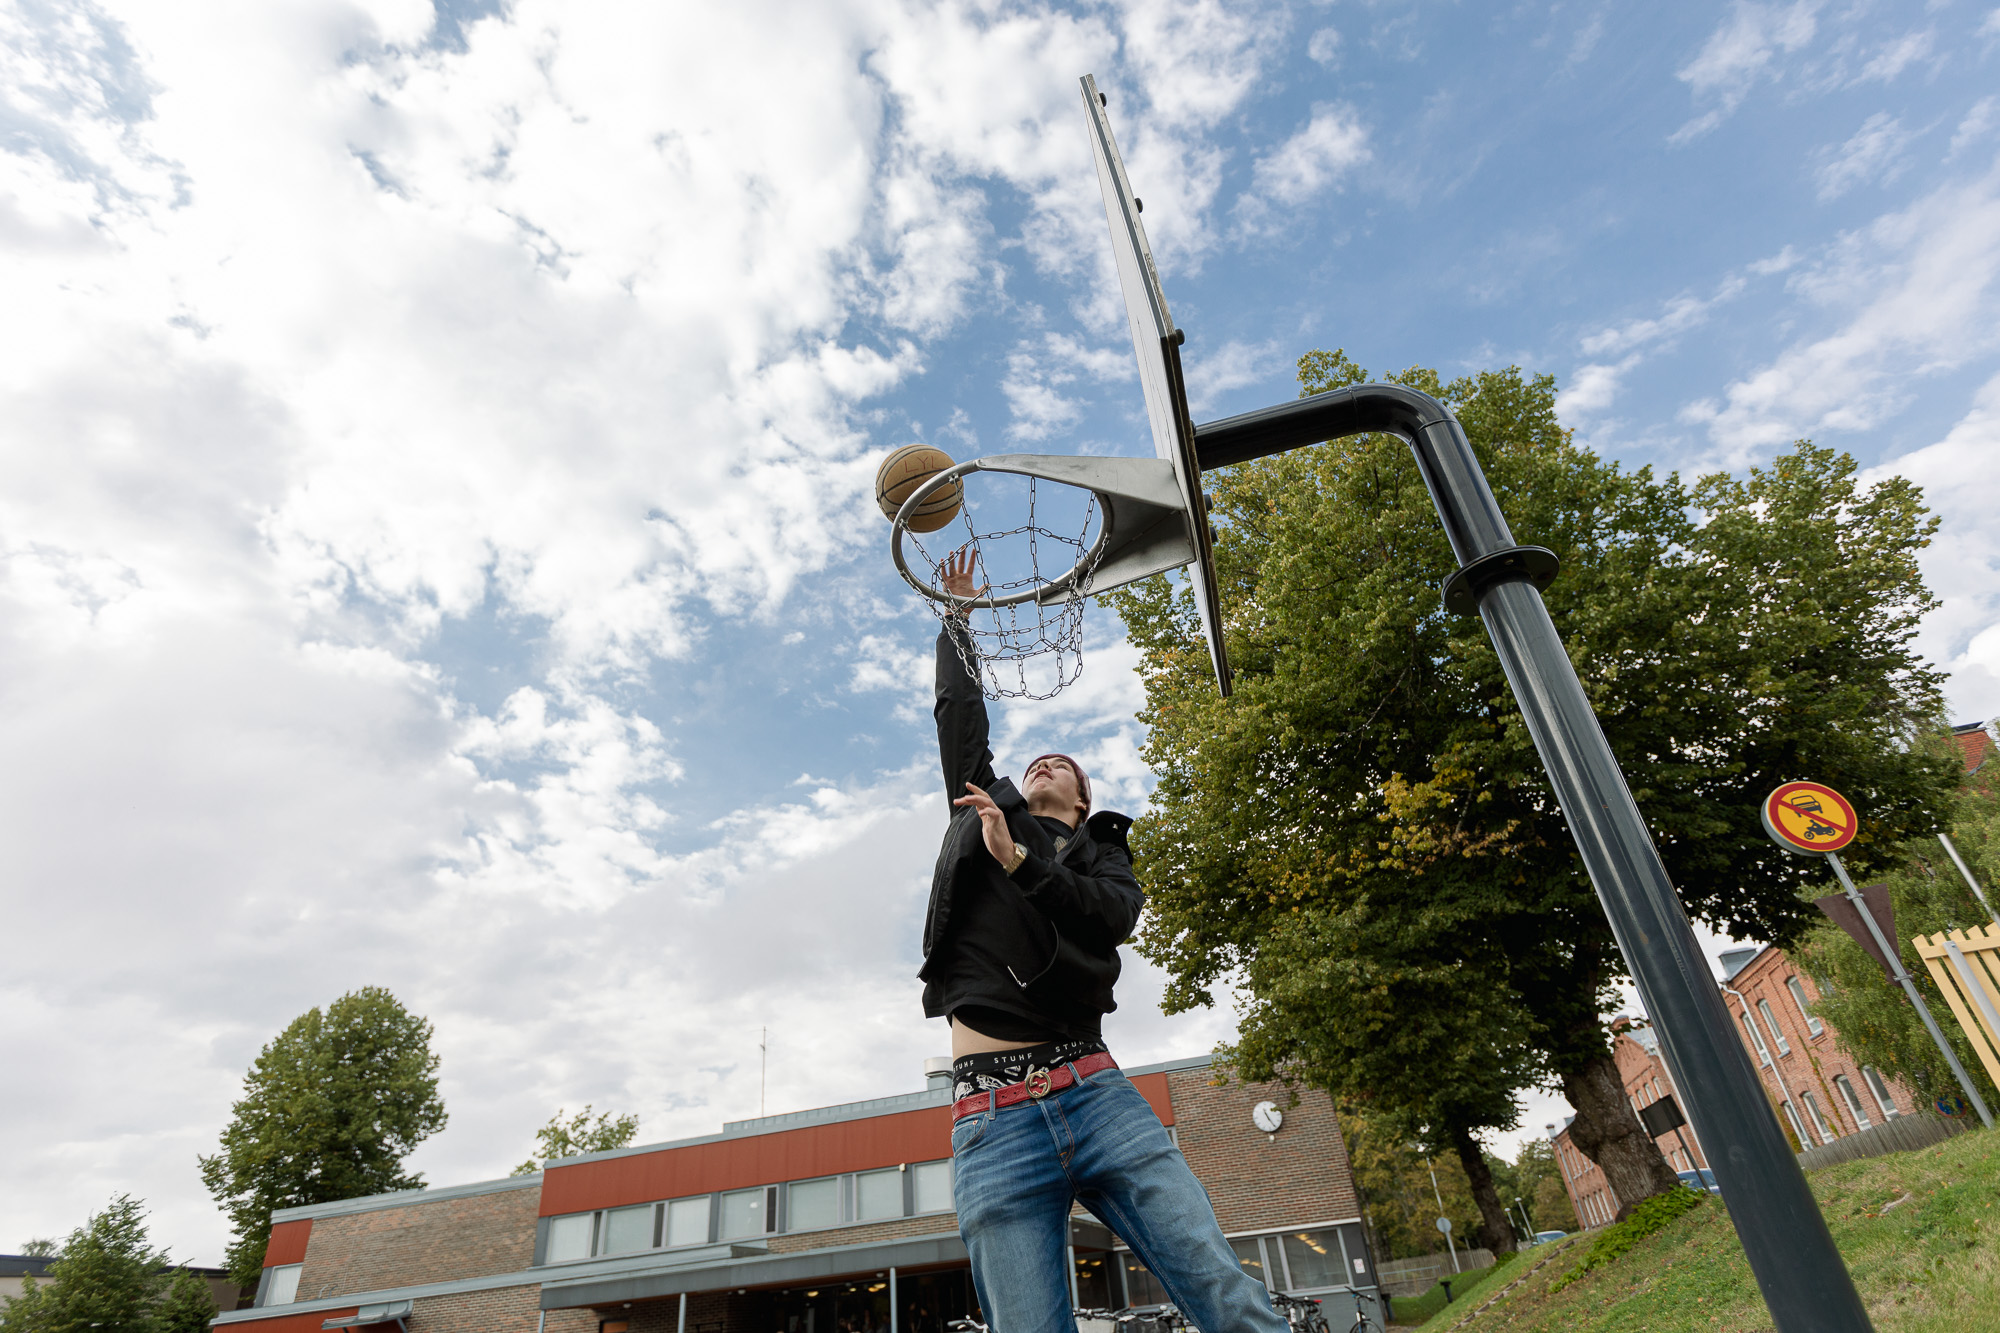 Opiskelija heittää pallon koriin lukion pihalla.